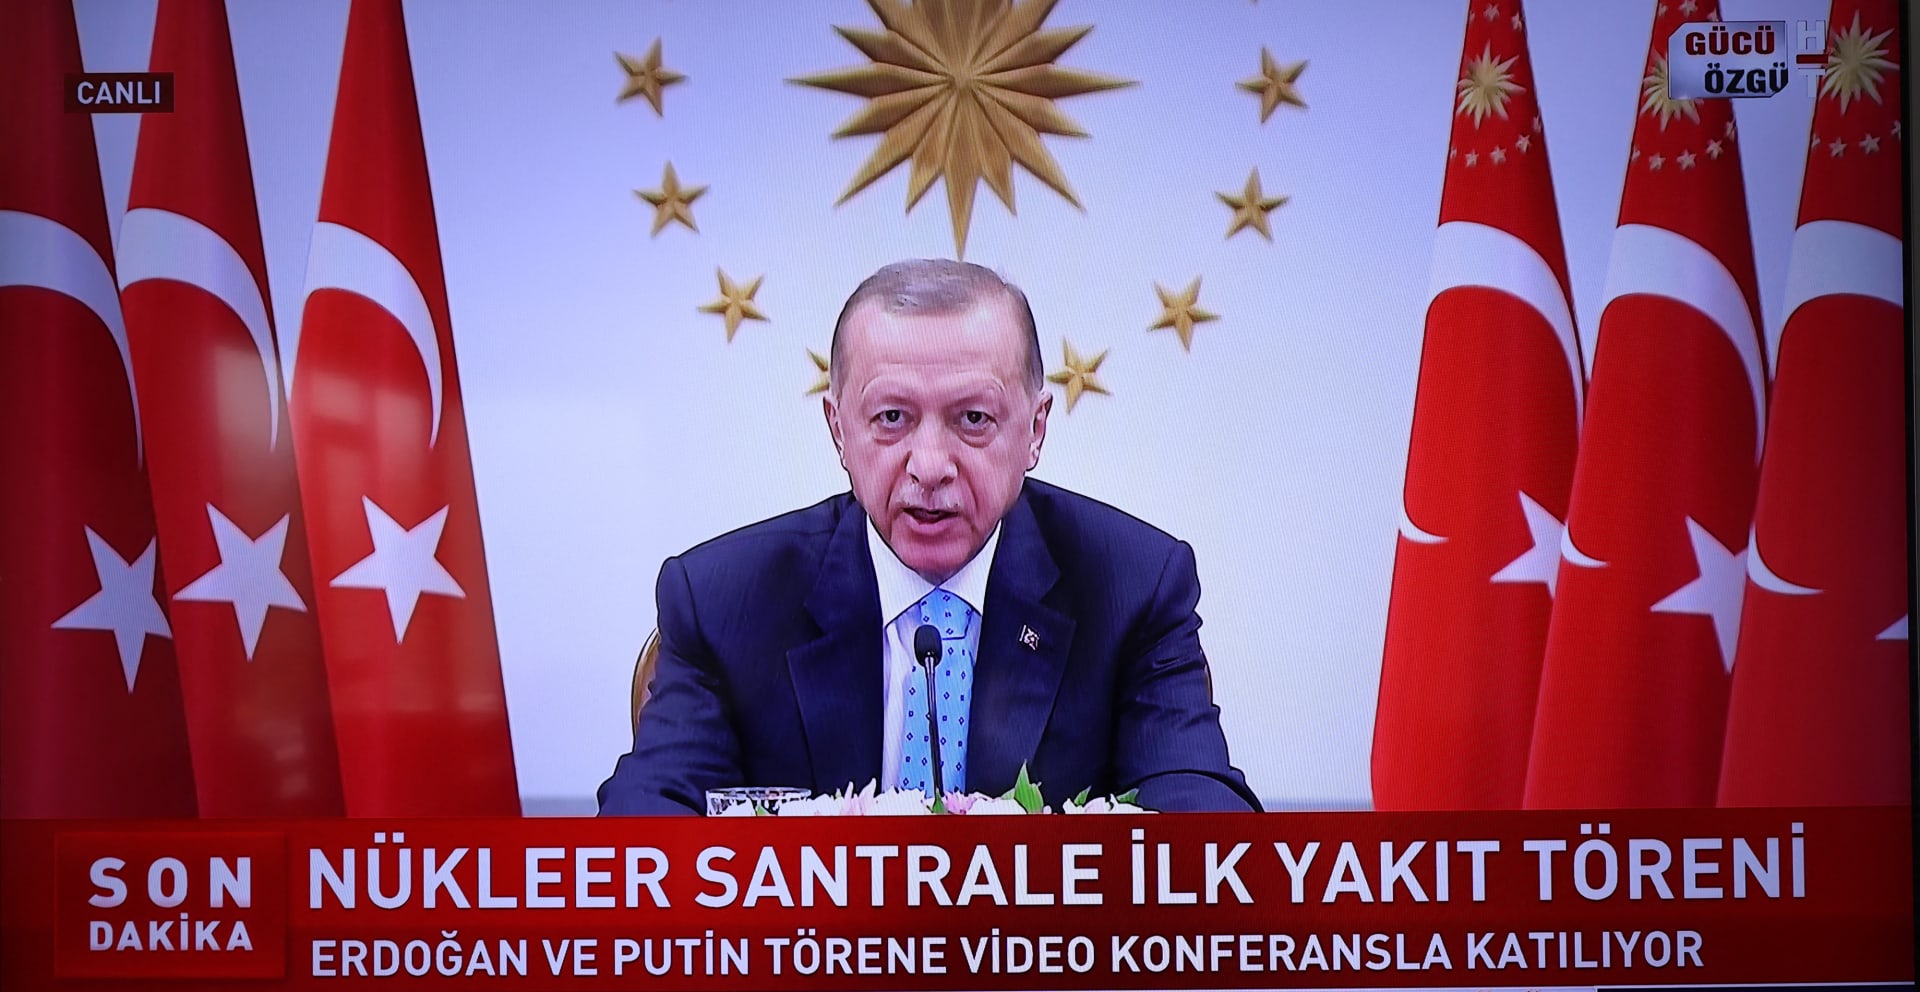 أردوغان يشعل تفاعلا بإعلان "تركيا تدخل نادي الدول النووية"